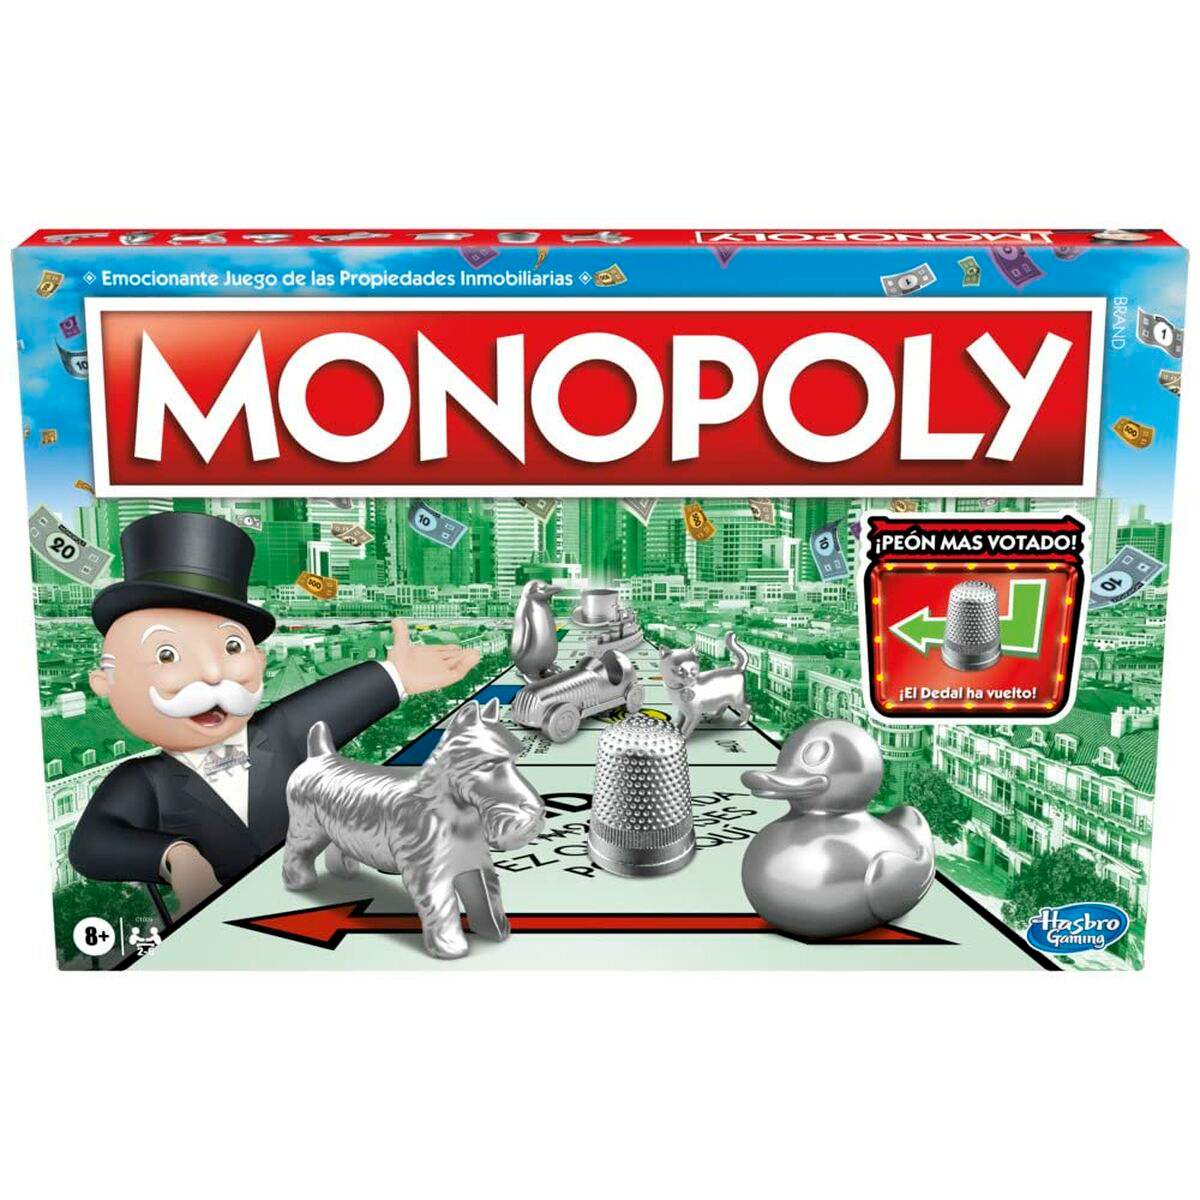 Jeu de société Hasbro Monopoly Clasico Madrid ES